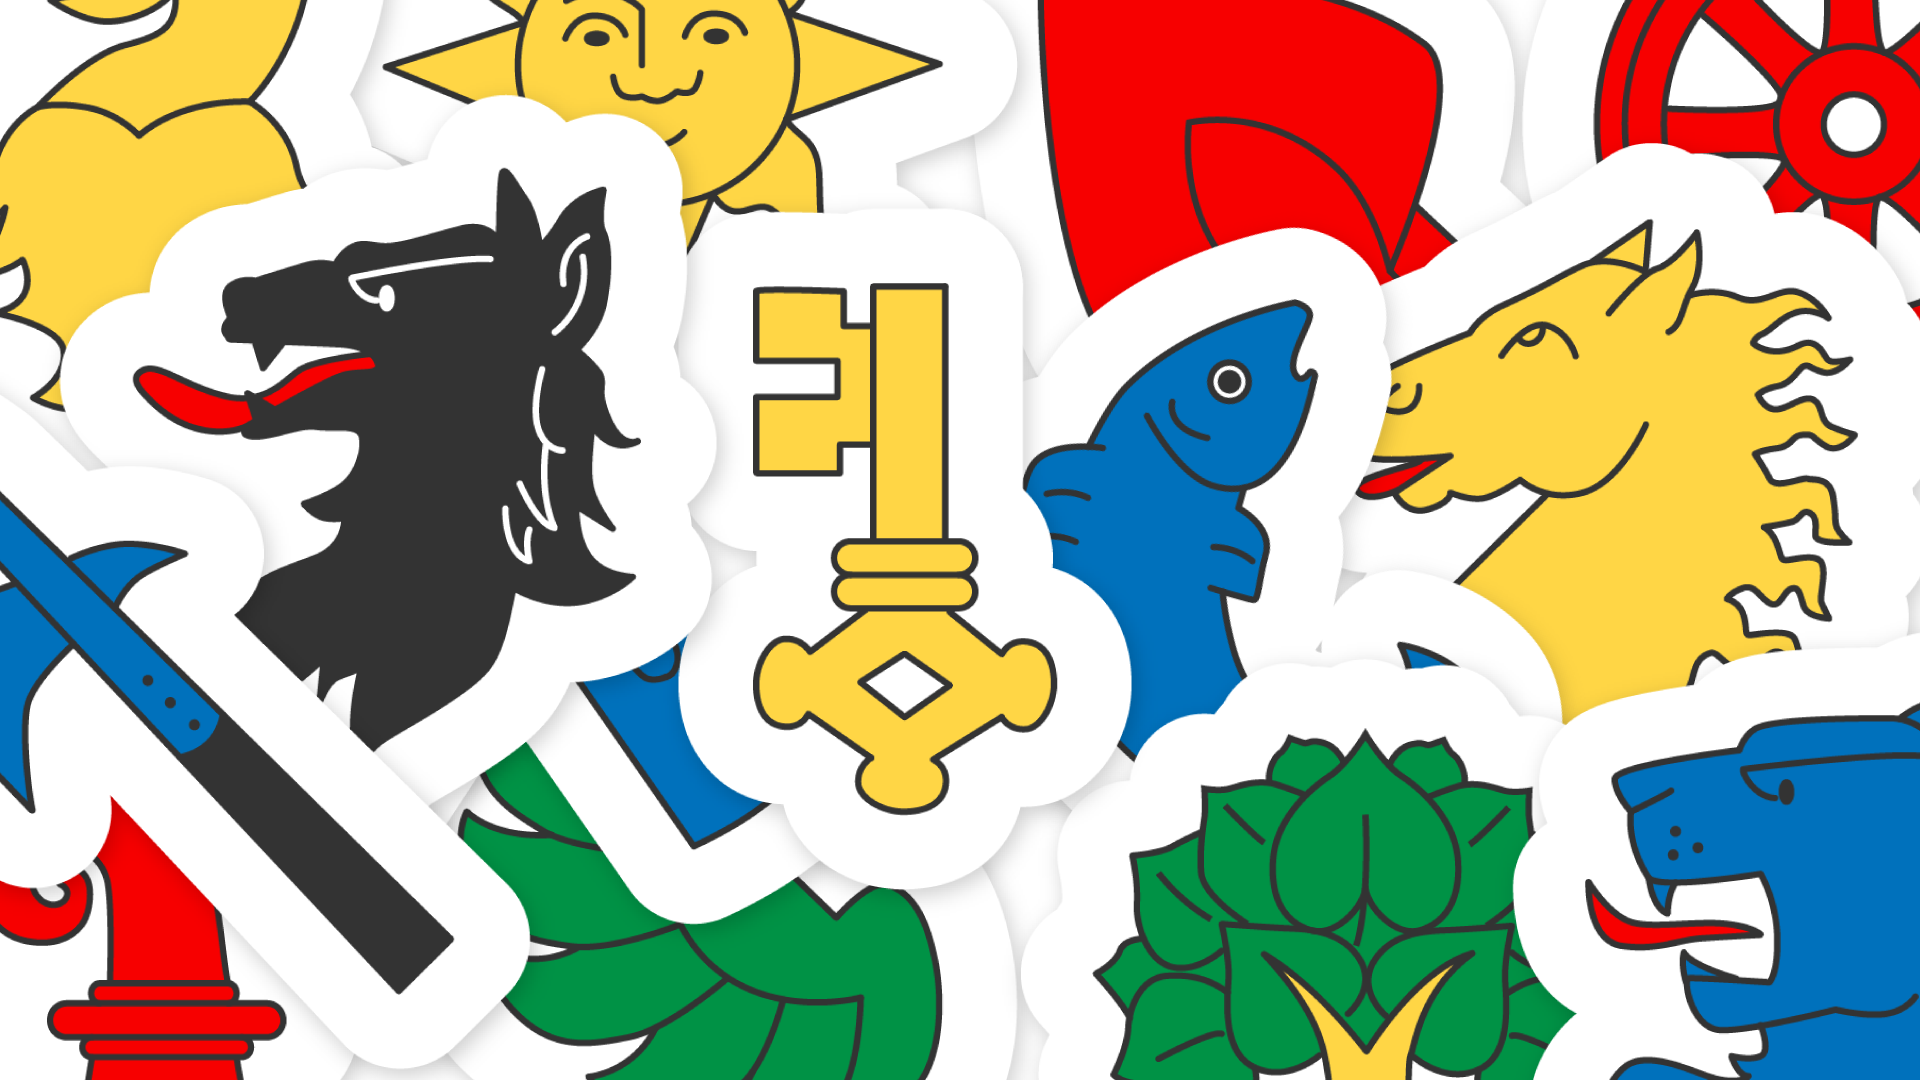 Die faszinierende Vielfalt der Schweizer Wappen